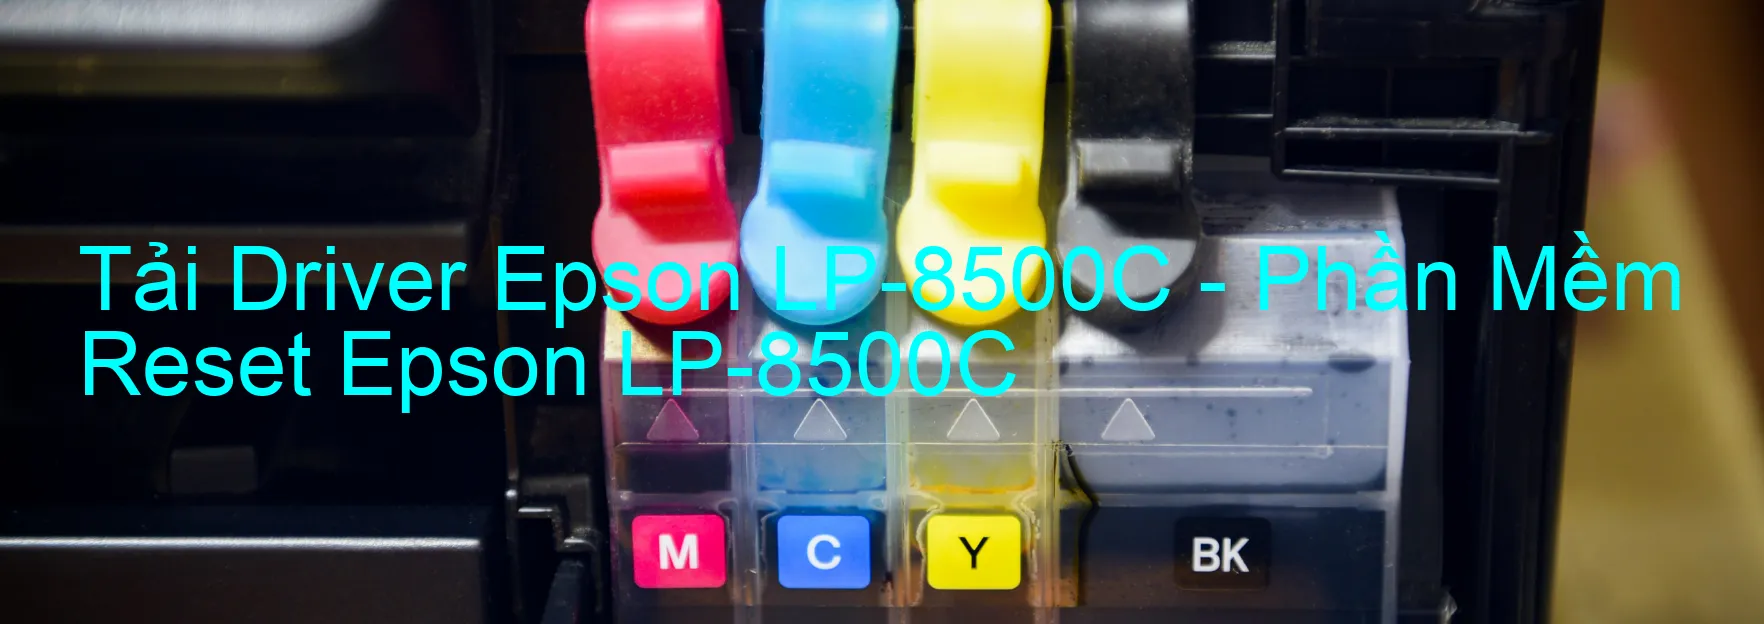 Driver Epson LP-8500C, Phần Mềm Reset Epson LP-8500C